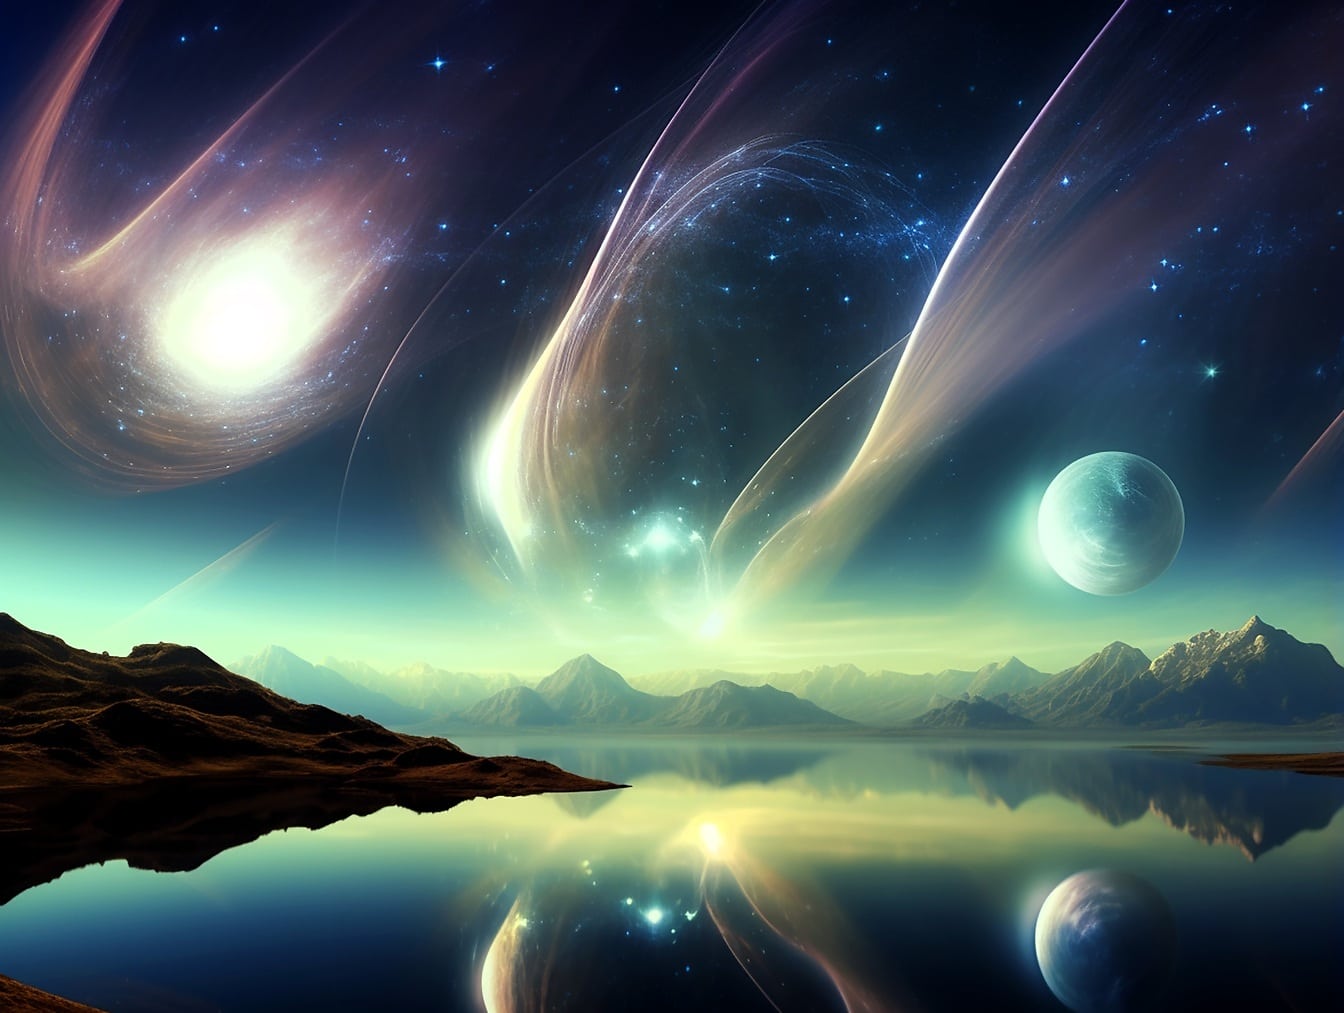 Paisaje de fantasía digital surrealista original de reflexión planetaria en la orilla del lago